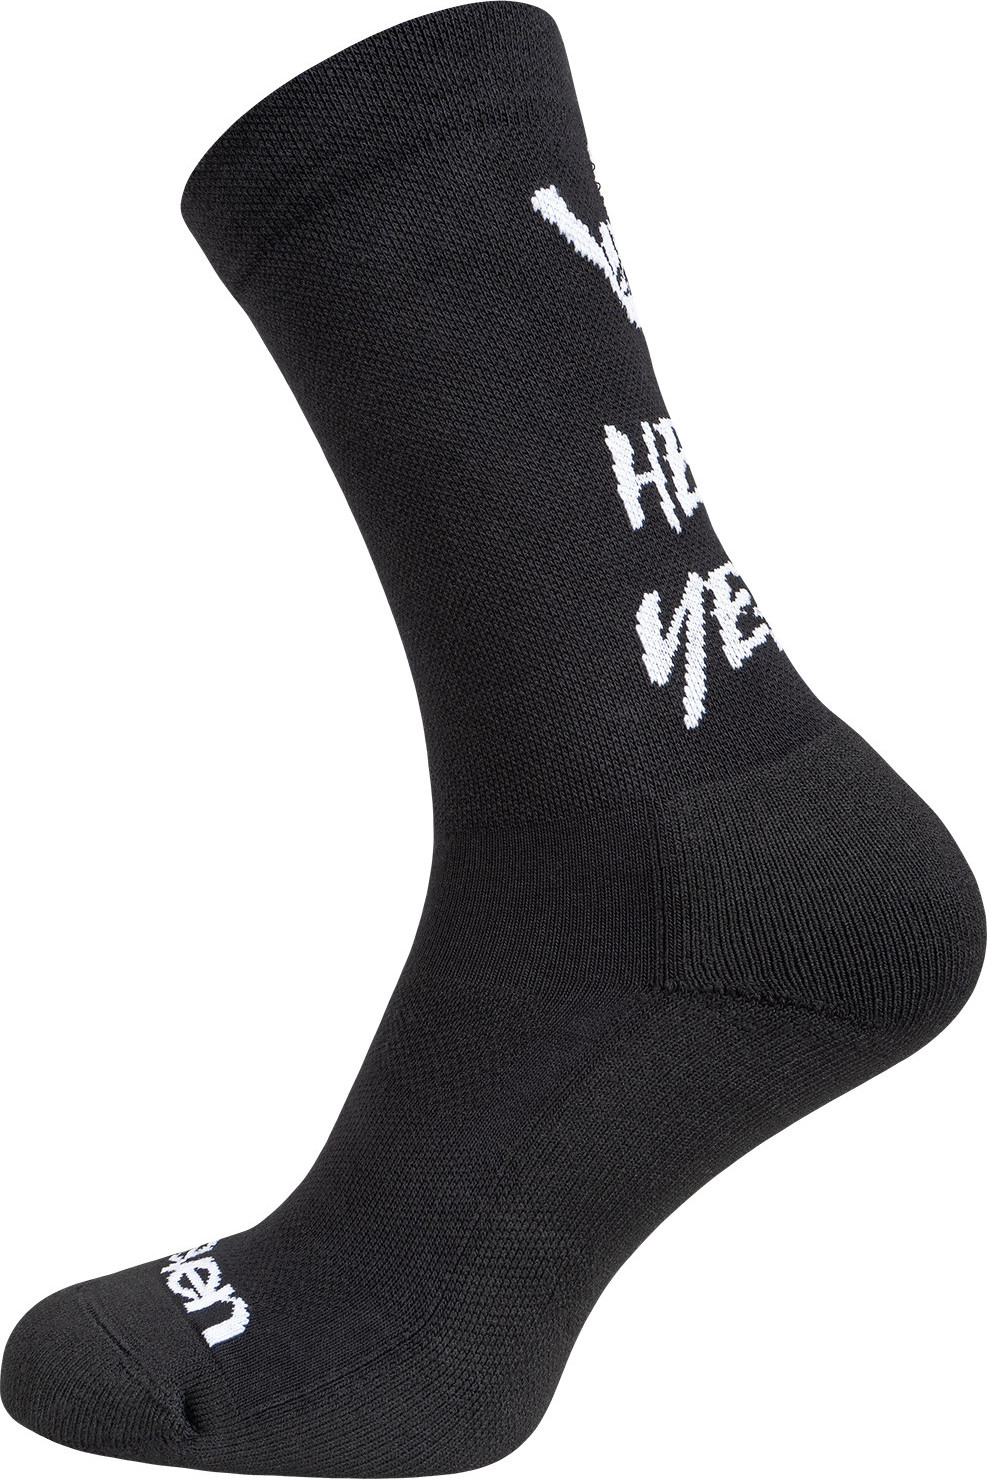 Teplé sportovní ponožky ELEVEN Lara Hell Yeah Velikost: L (42-44)